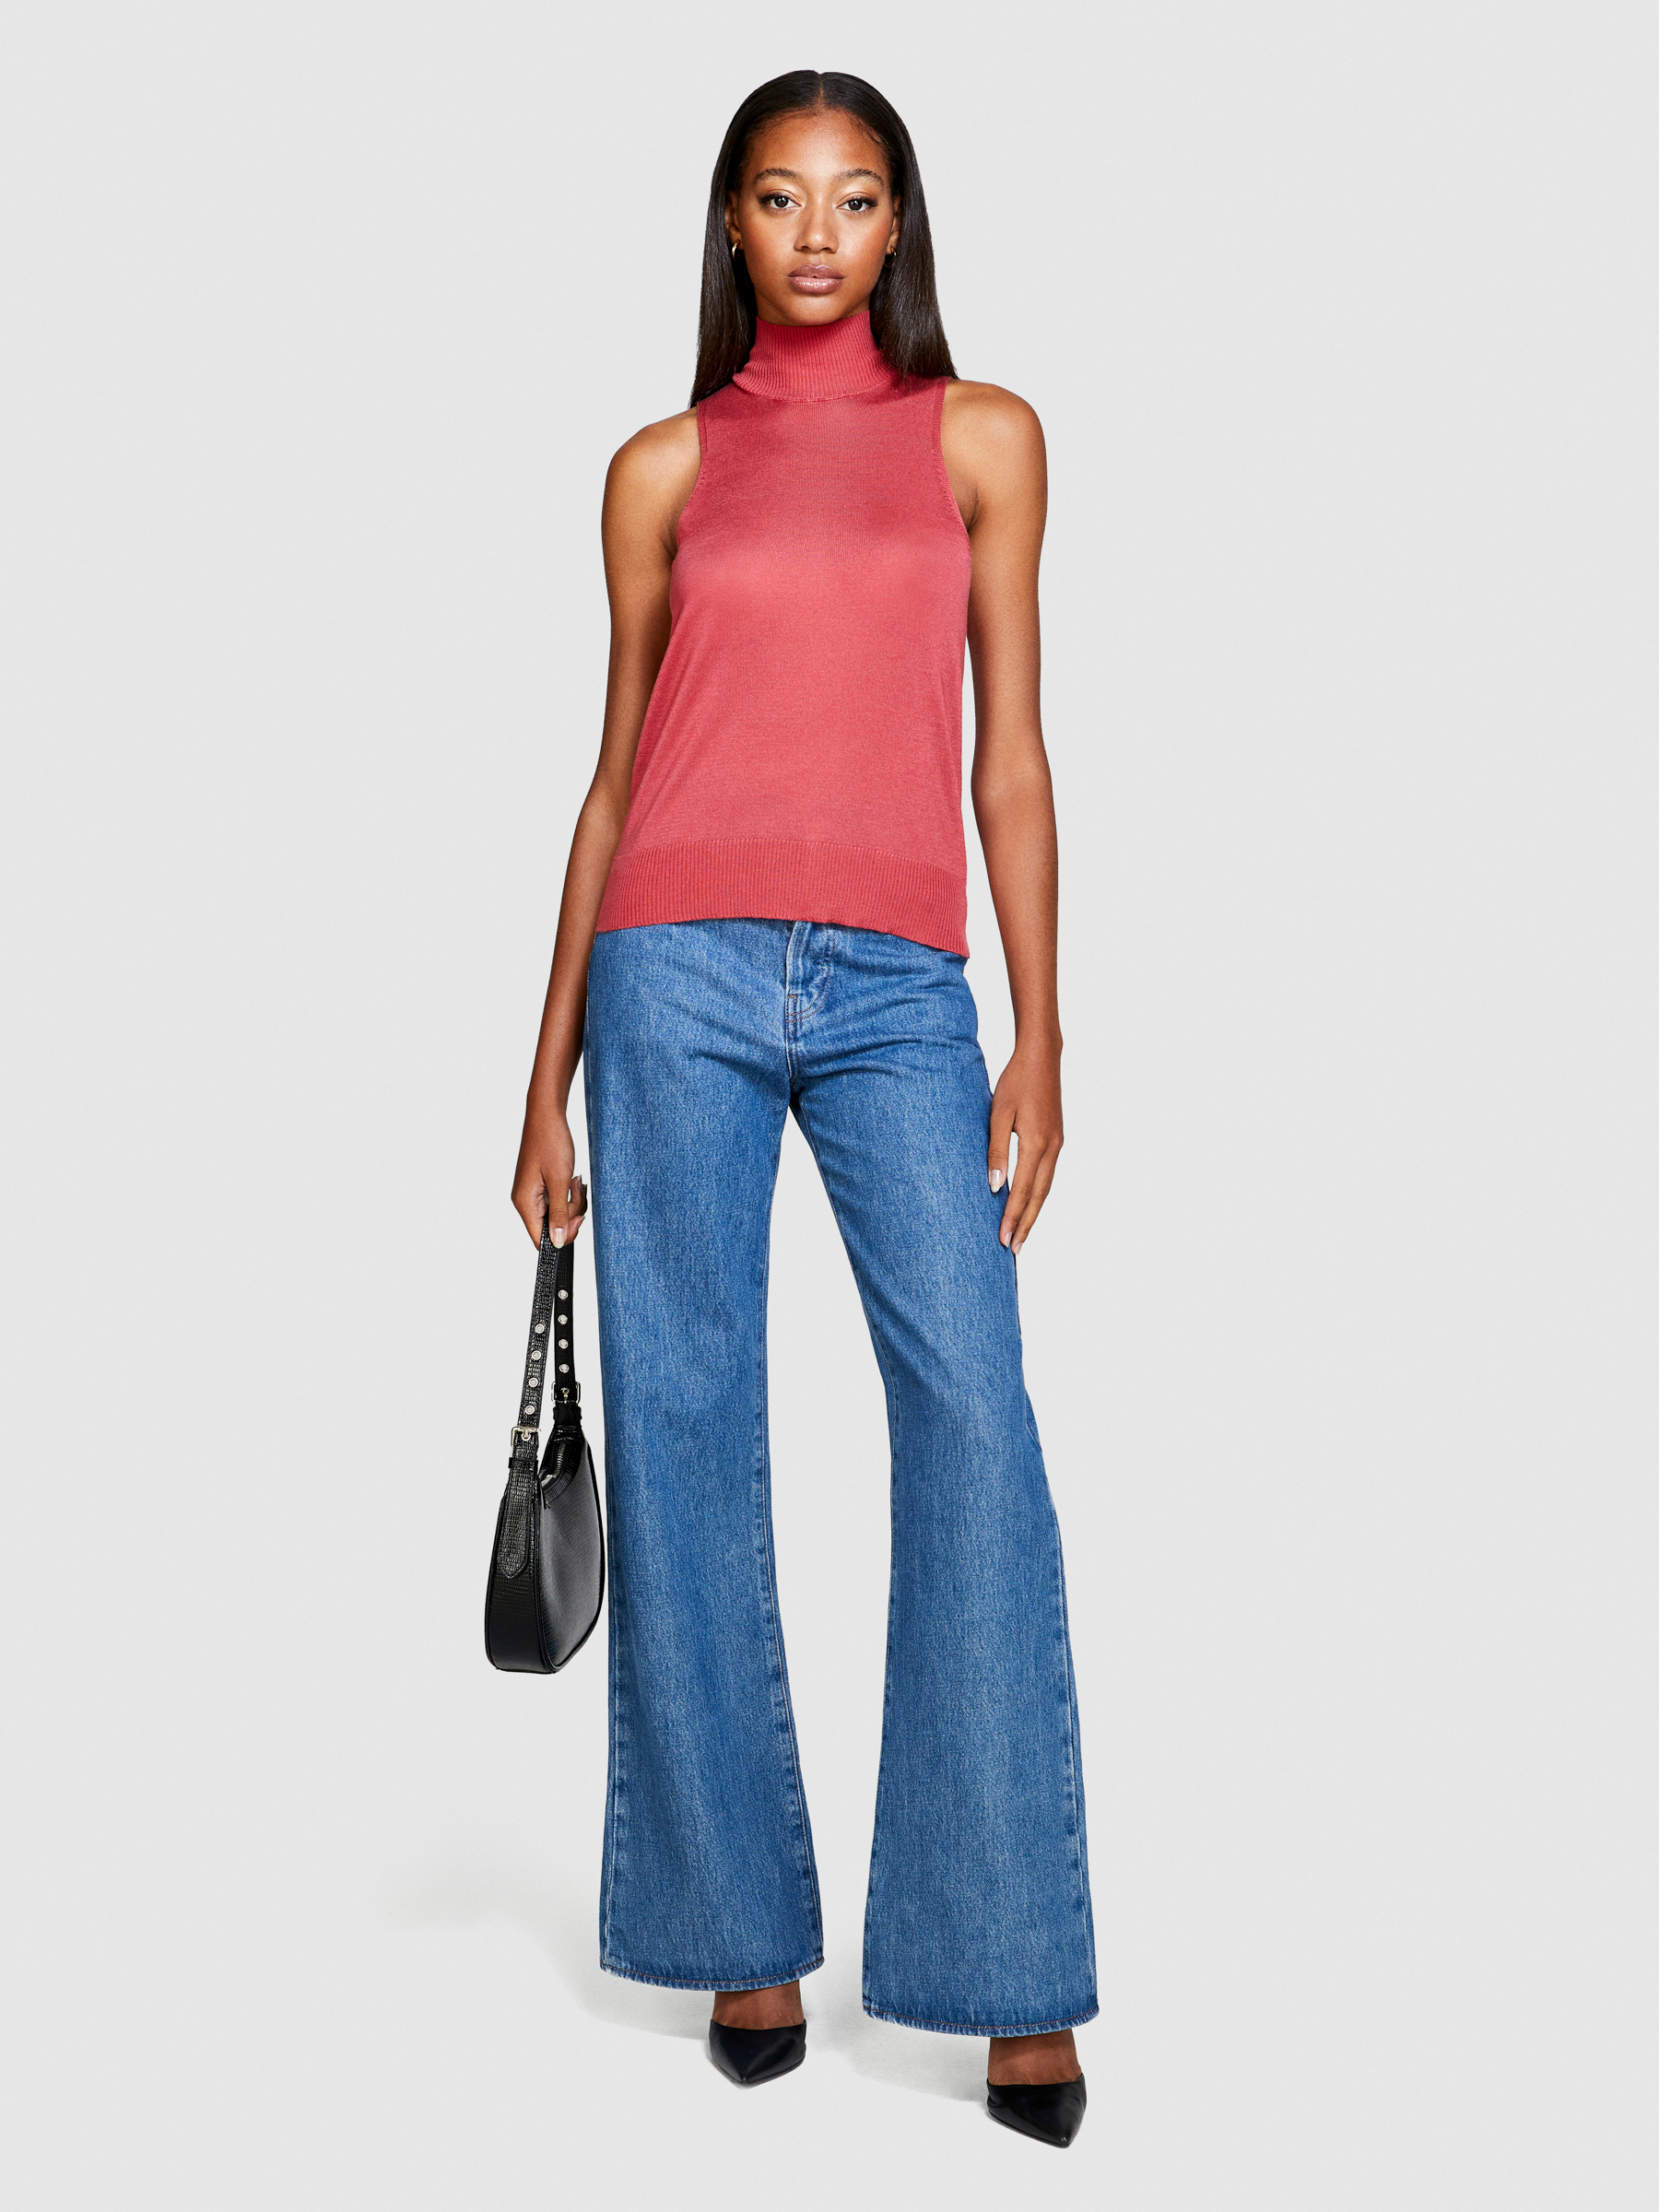 Sisley - Knit Turtleneck Top, Woman, Coral, Size: S